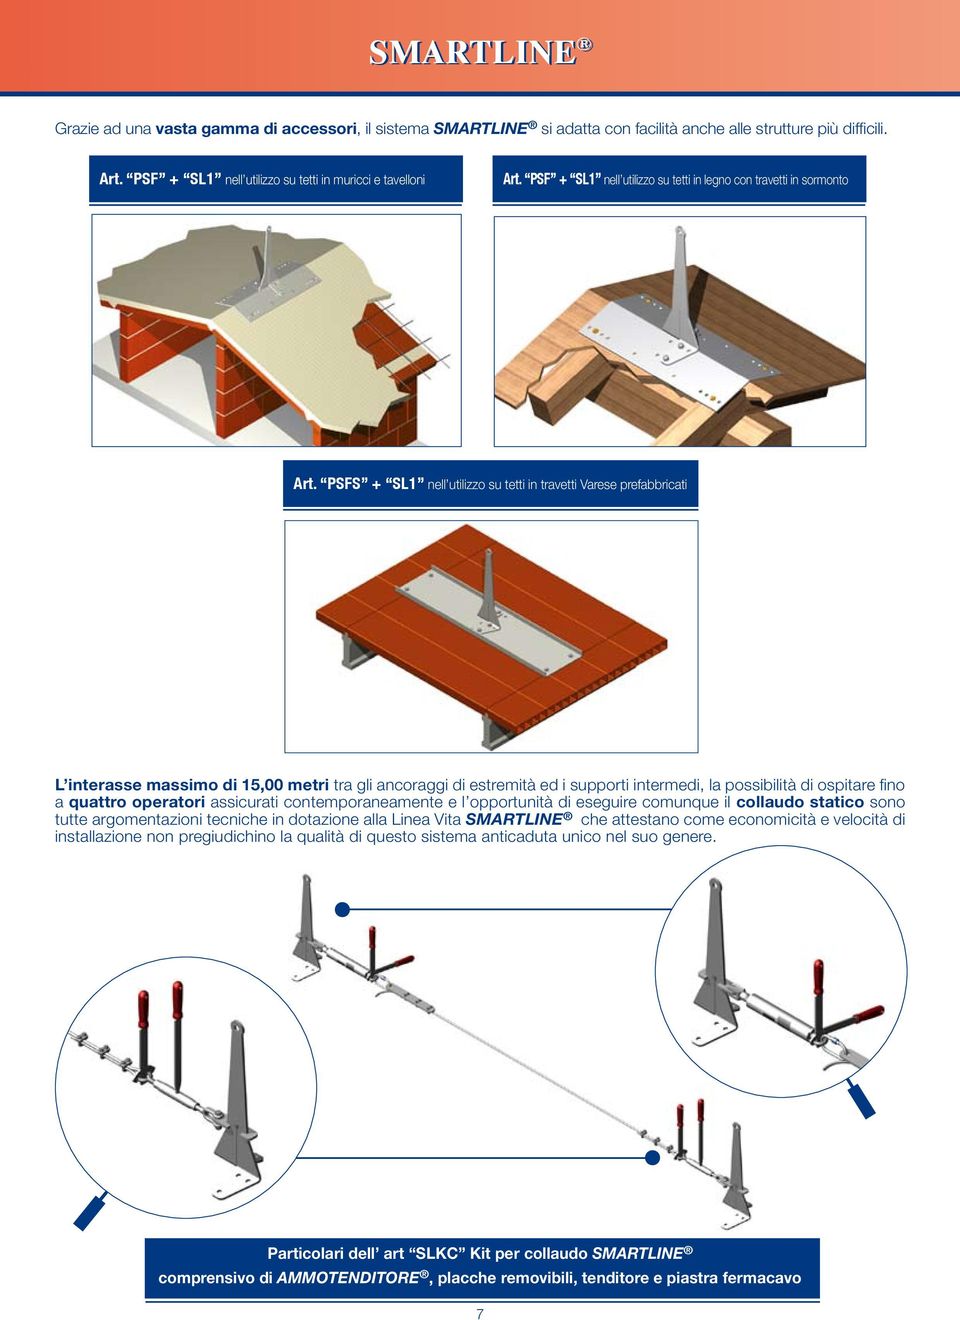 PSFS + SL1 nell utilizzo su tetti in travetti Varese prefabbricati L interasse massimo di 15,00 metri tra gli ancoraggi di estremità ed i supporti intermedi, la possibilità di ospitare fino a quattro